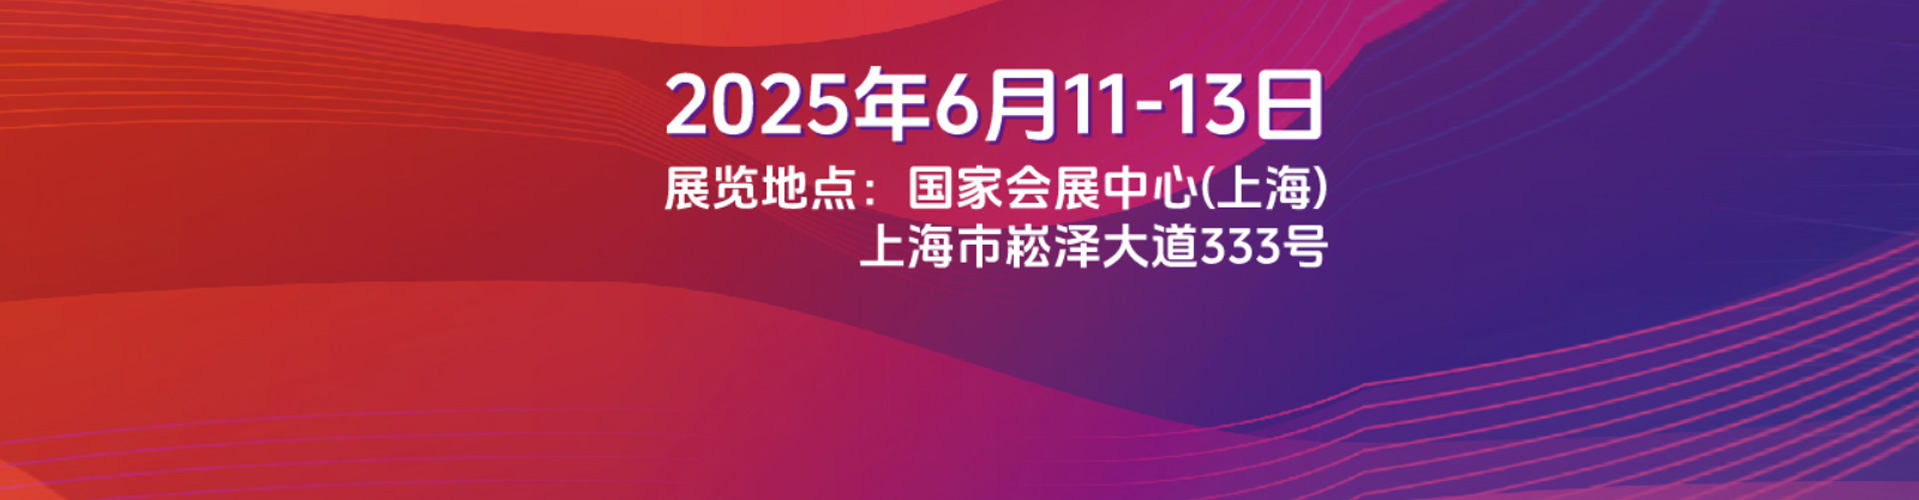 上海展会SNEC2020网站